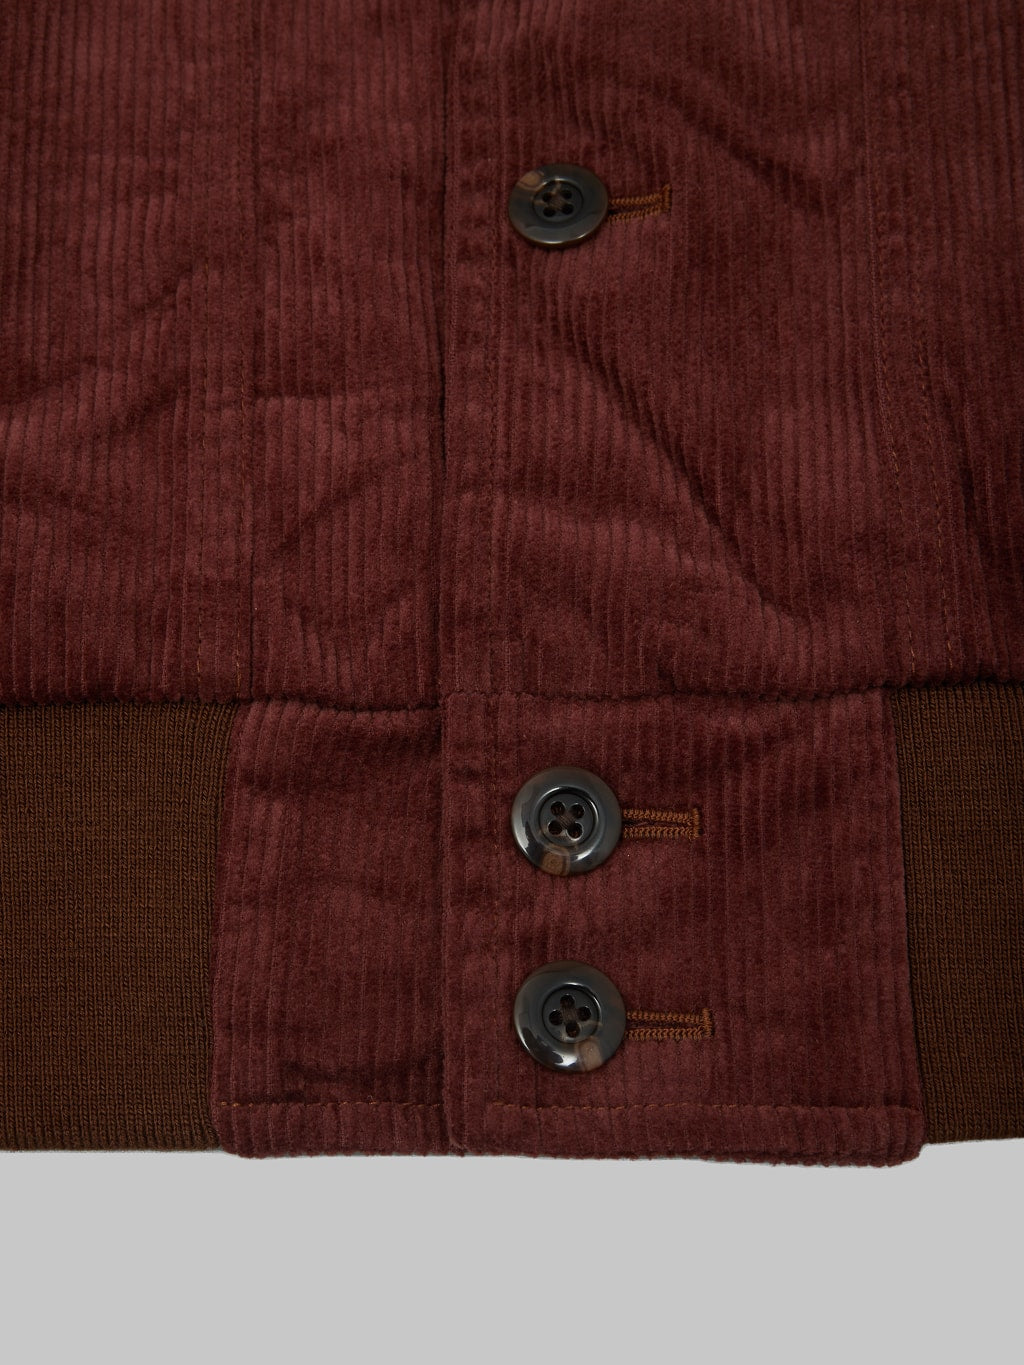 Tanuki Sazanami Corduro mud Dyed brown Jacket hem